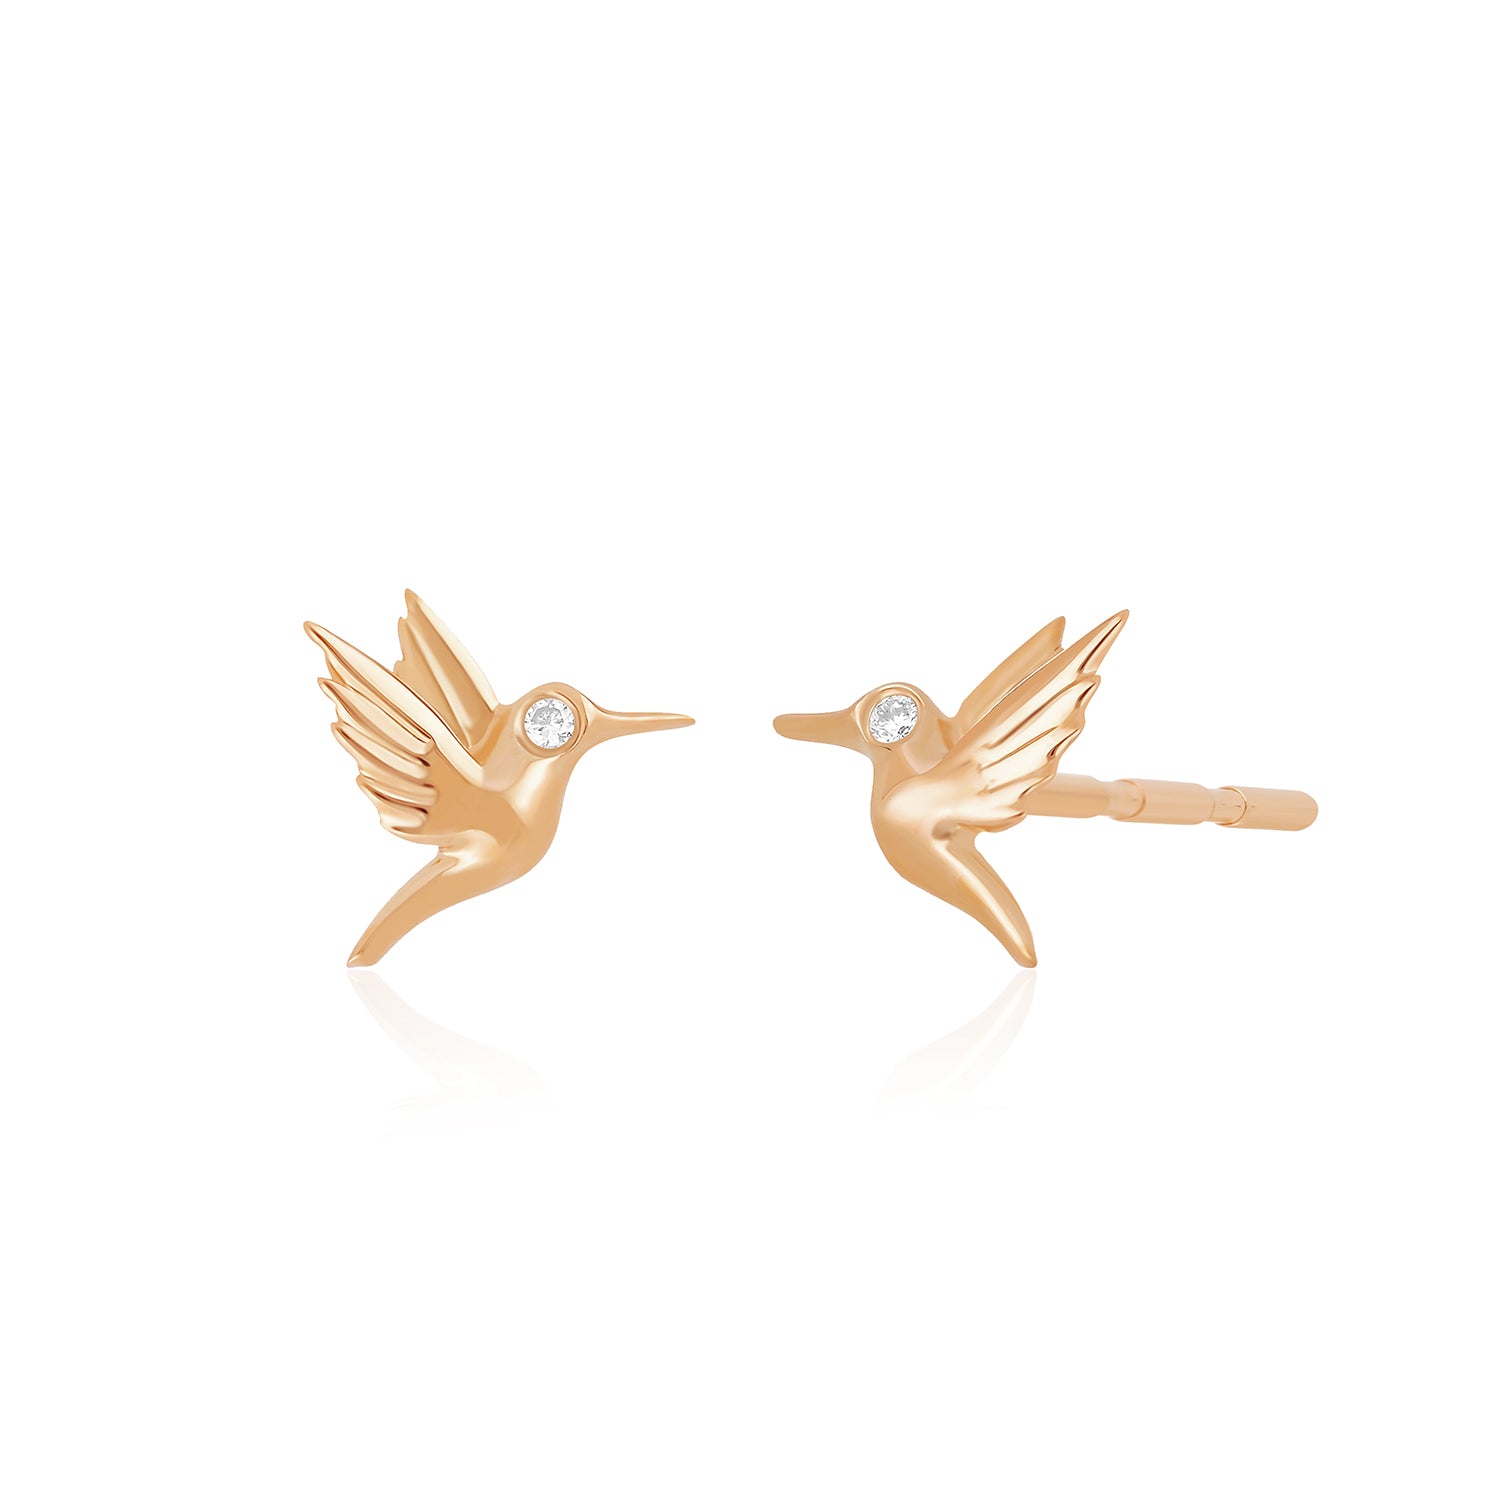 Mini Hummingbird Stud Earrings